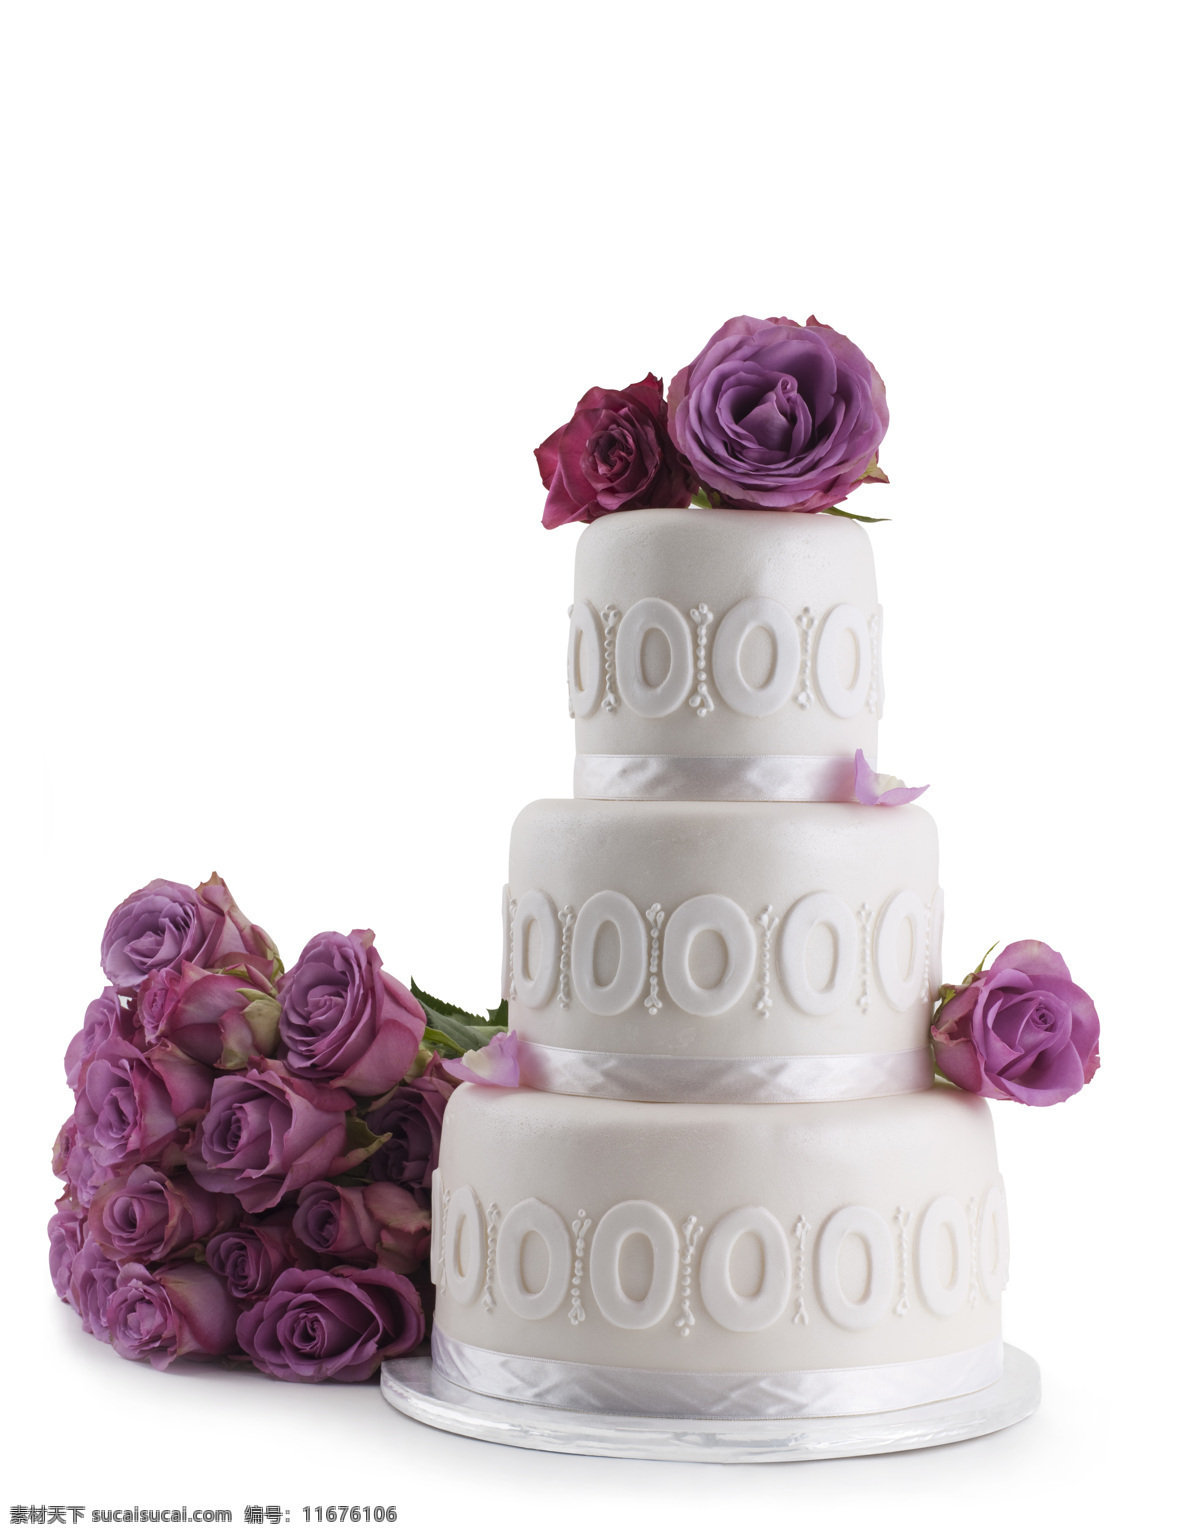 紫色 玫瑰花 豪华 婚礼 蛋糕 面粉原料 糕点 食物 美食 烘培原料 餐饮美食 点心图片